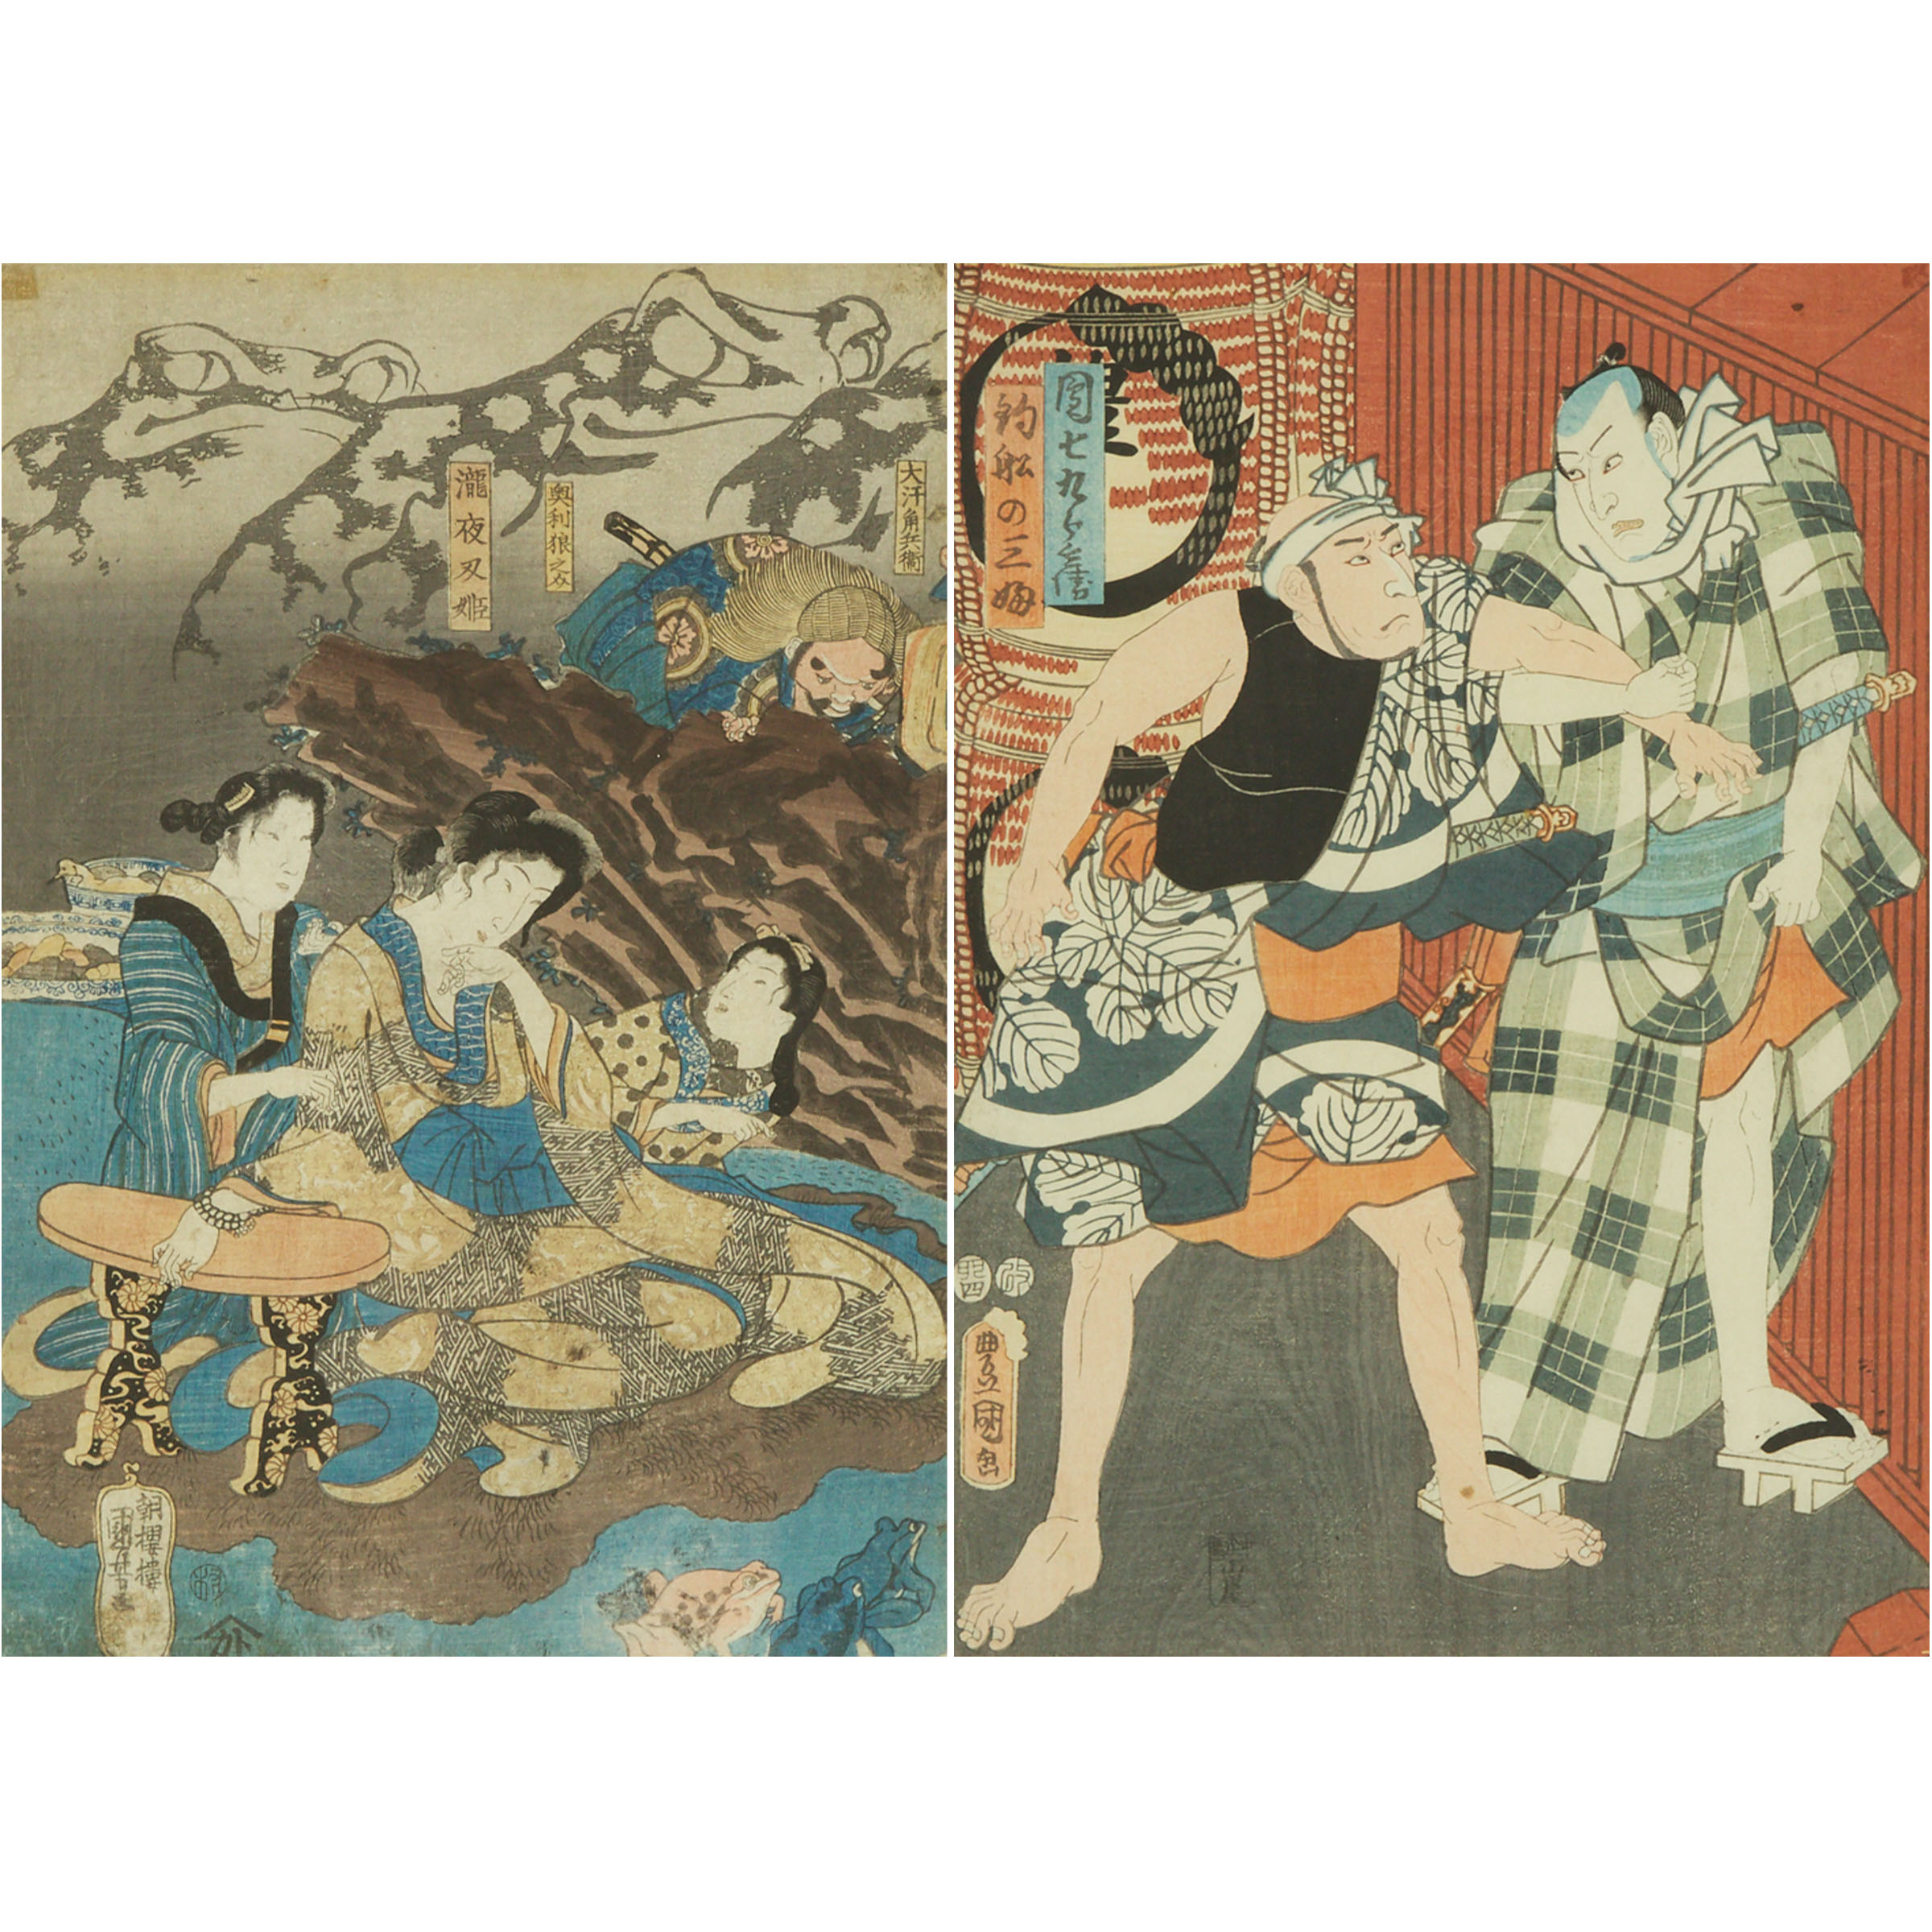 Utagawa Kunisada (Toyokuni III, 1786-1865)